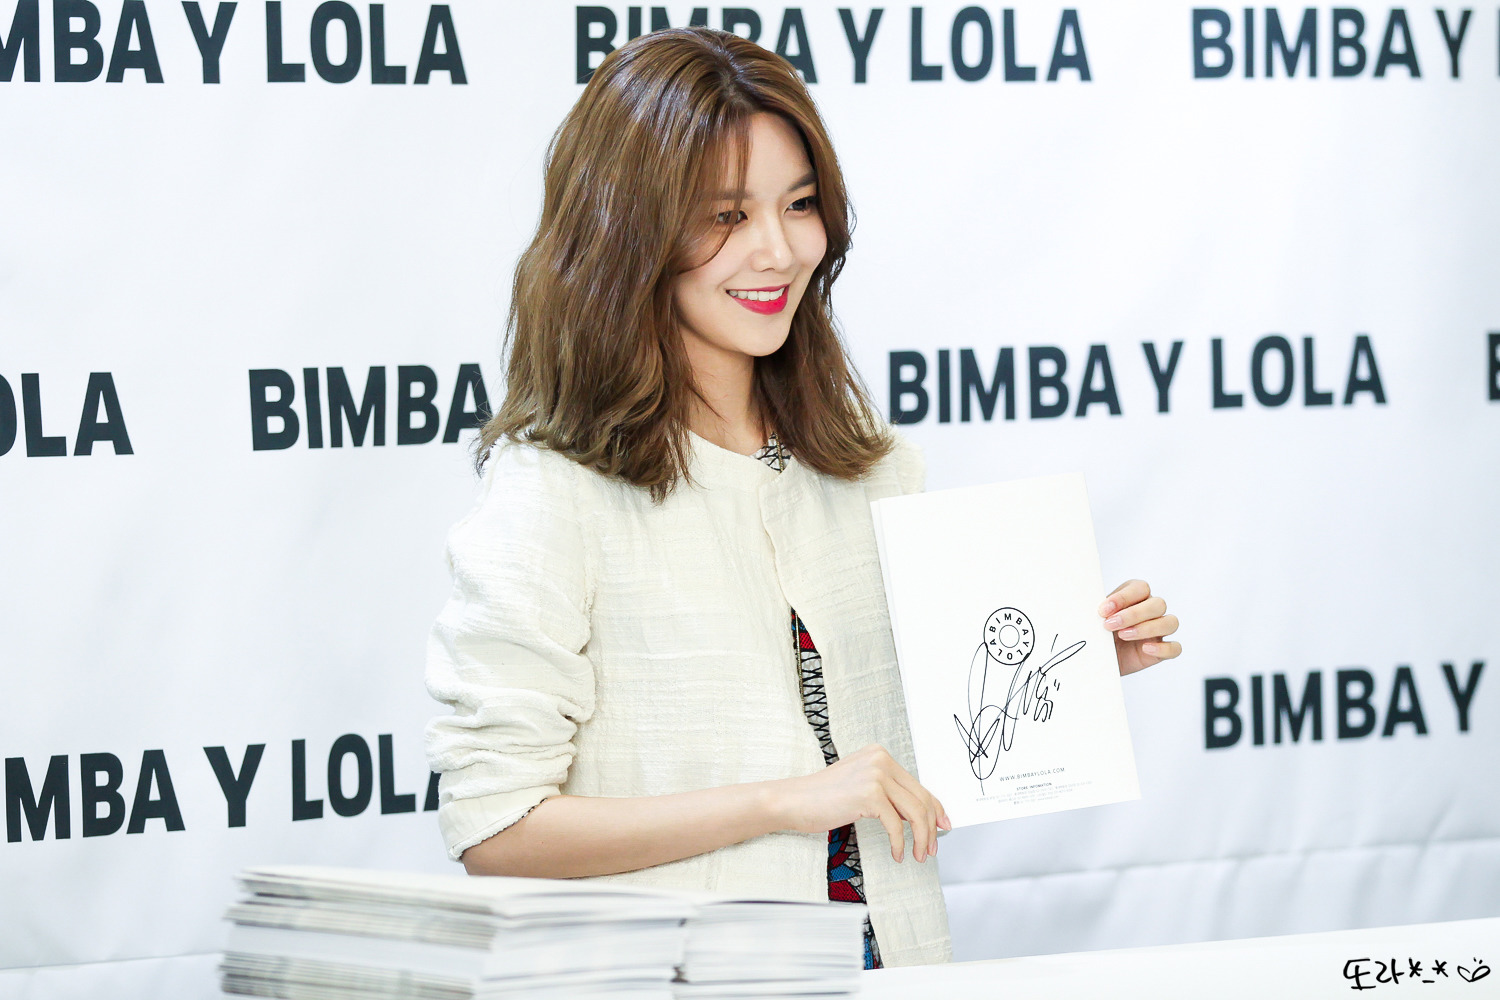 [PIC][10-03-2017]SooYoung tham dự buổi Fansign cho dòng thời trang "BIMBA Y LOLA" tại Lotte Department Store vào chiều nay - Page 3 22298642590C73E5083D4E